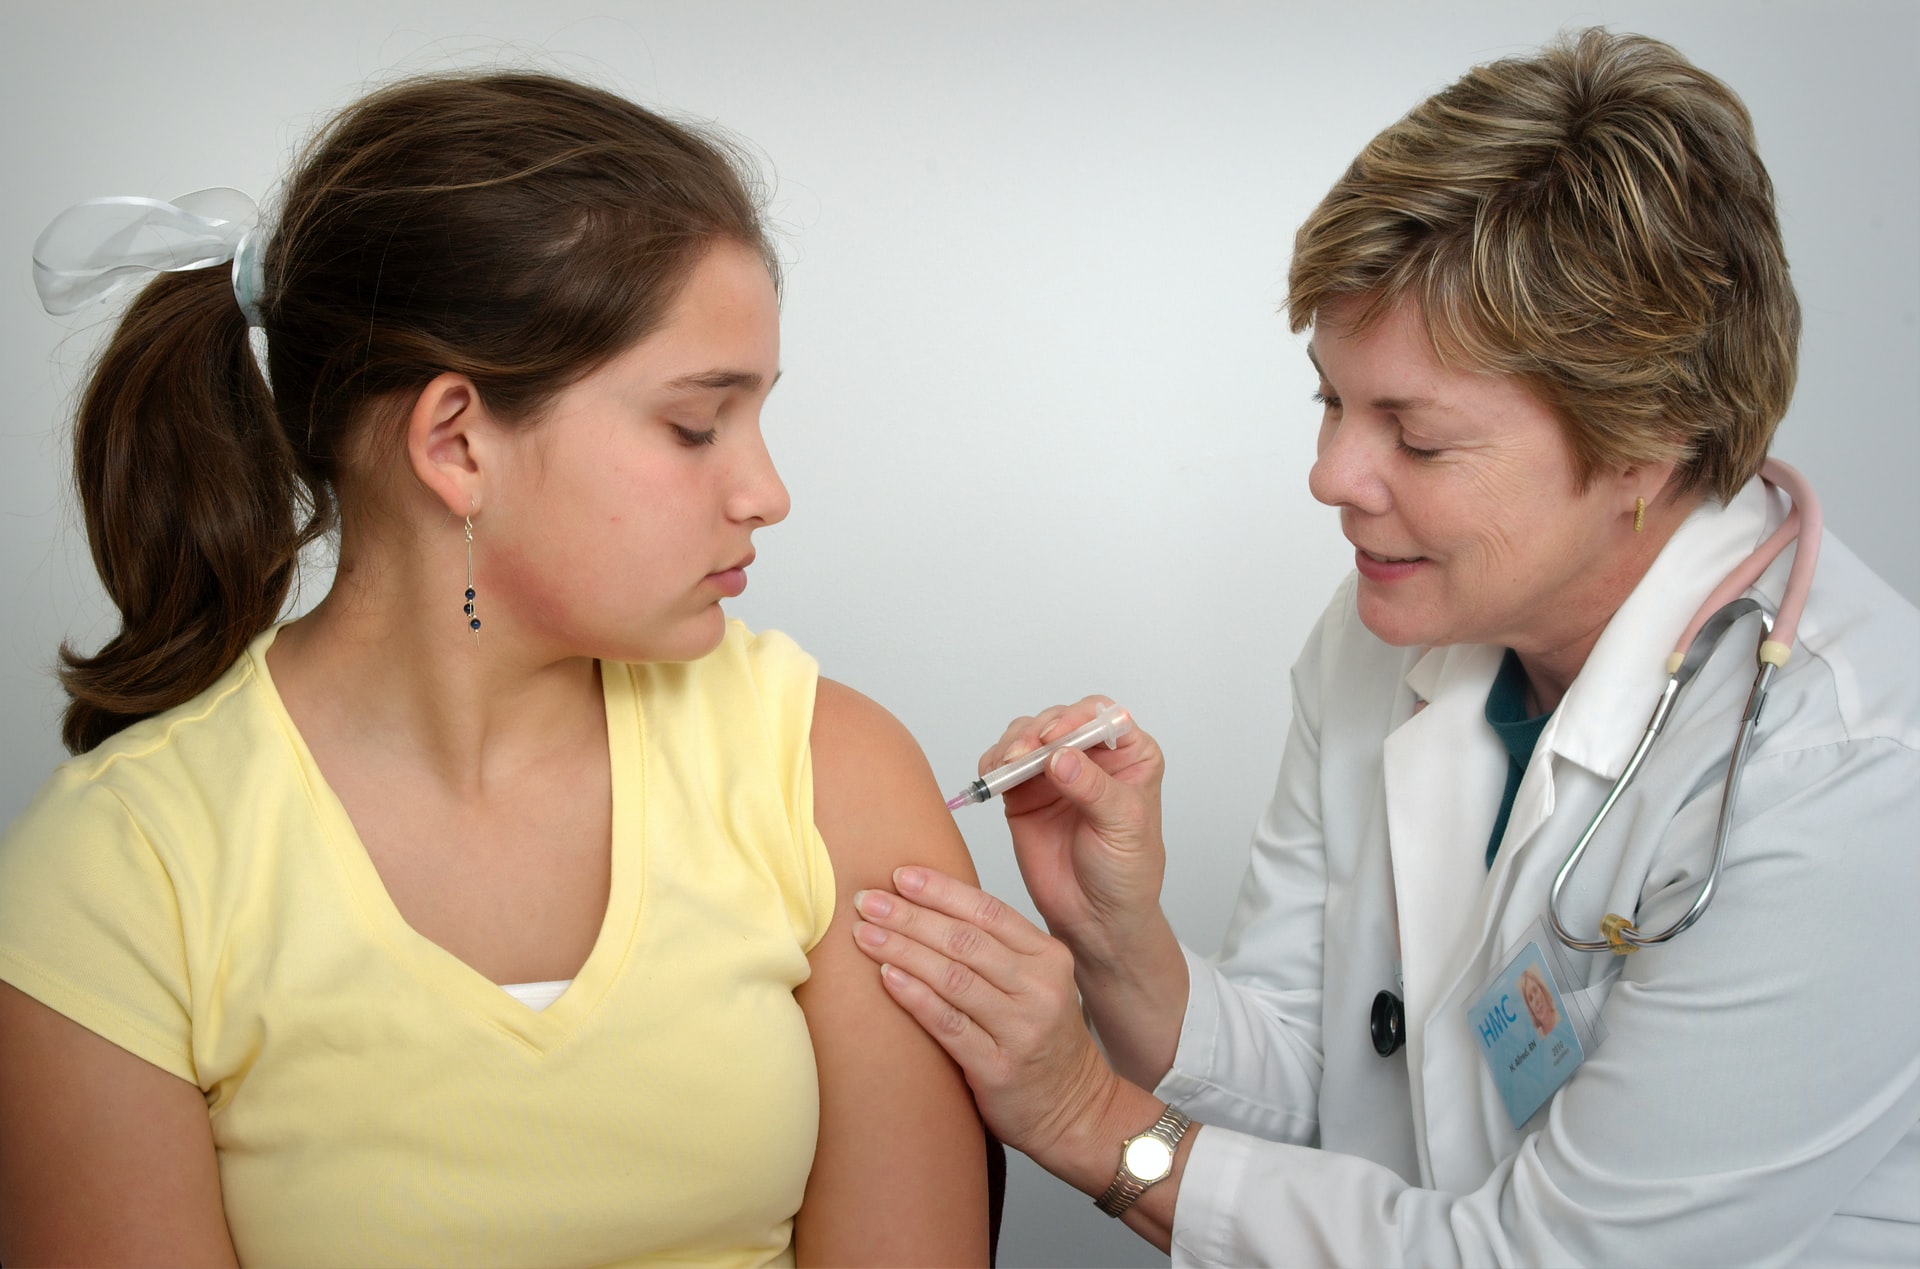 Las vacunas son consideradas uno de los mejores avances de la medicina moderna. (Foto Prensa Libre: CDC en Unsplash).